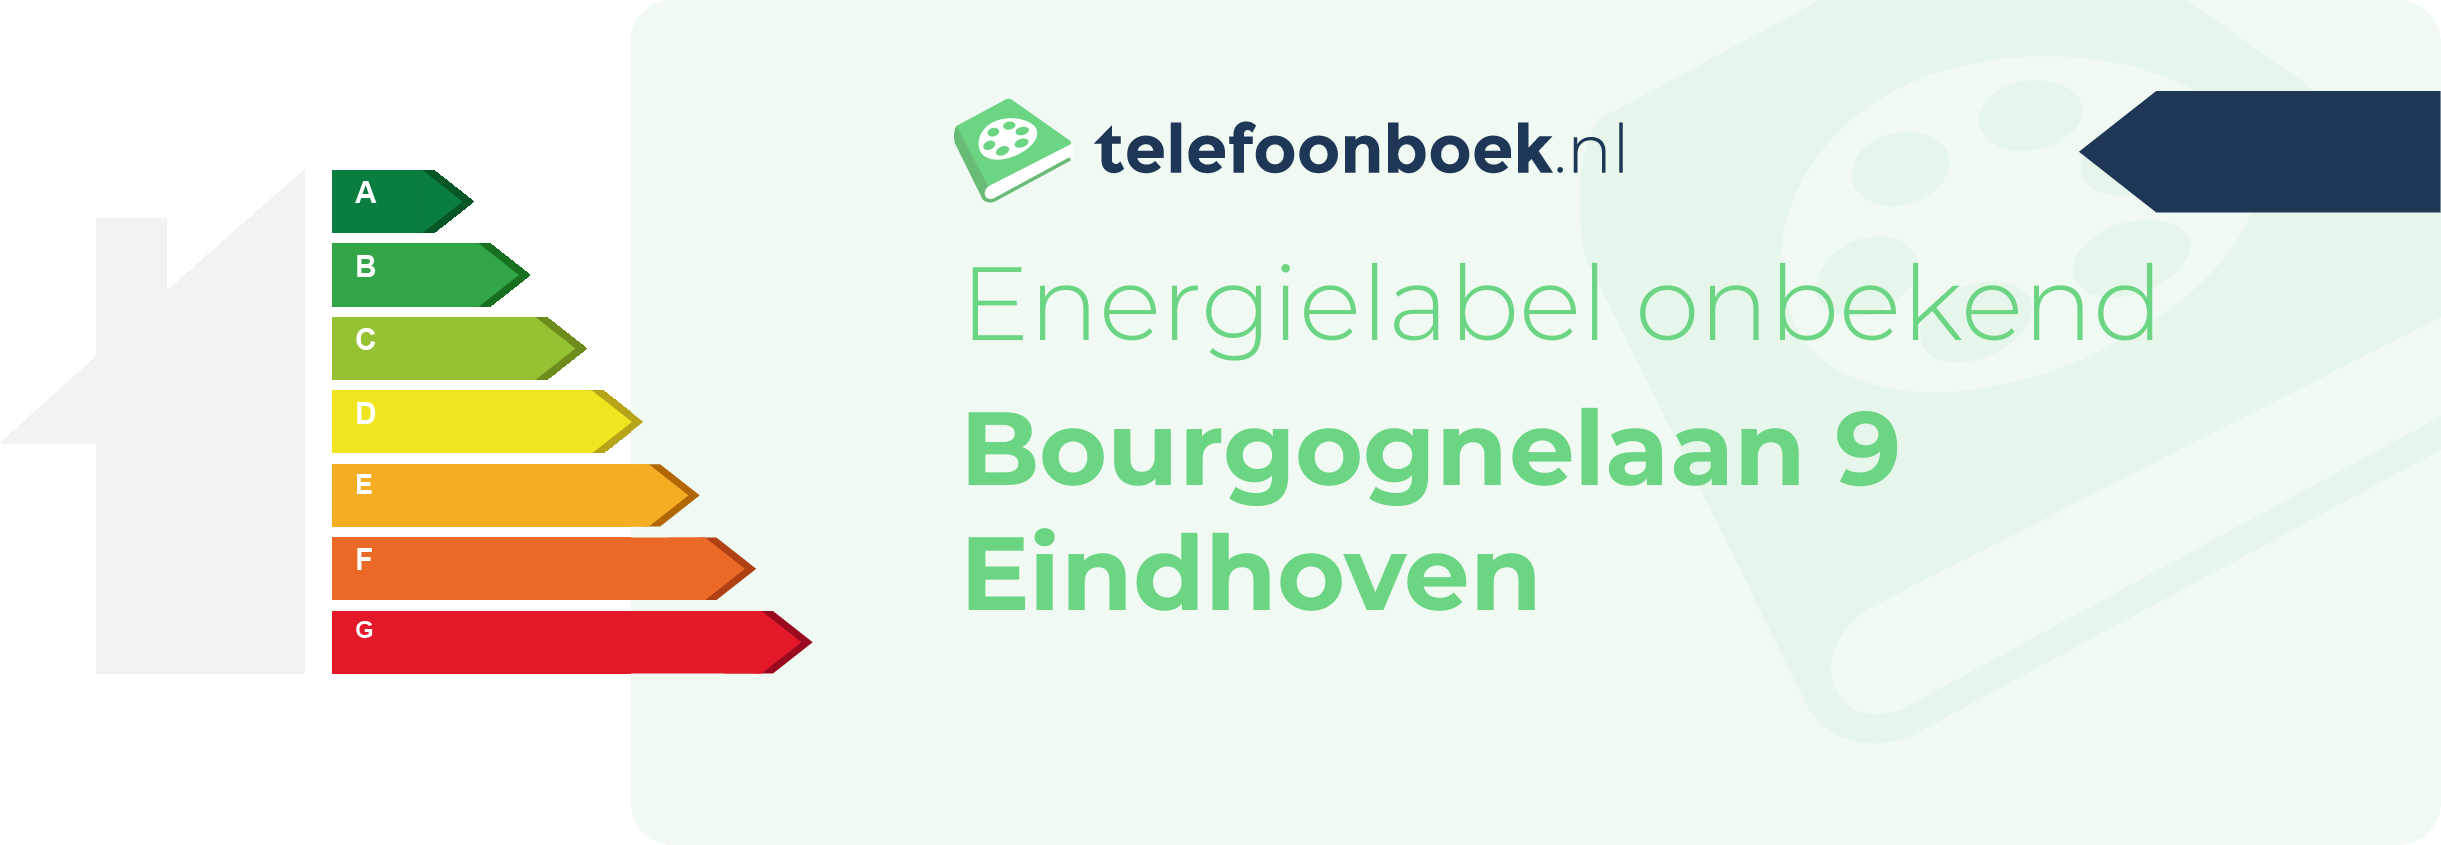 Energielabel Bourgognelaan 9 Eindhoven